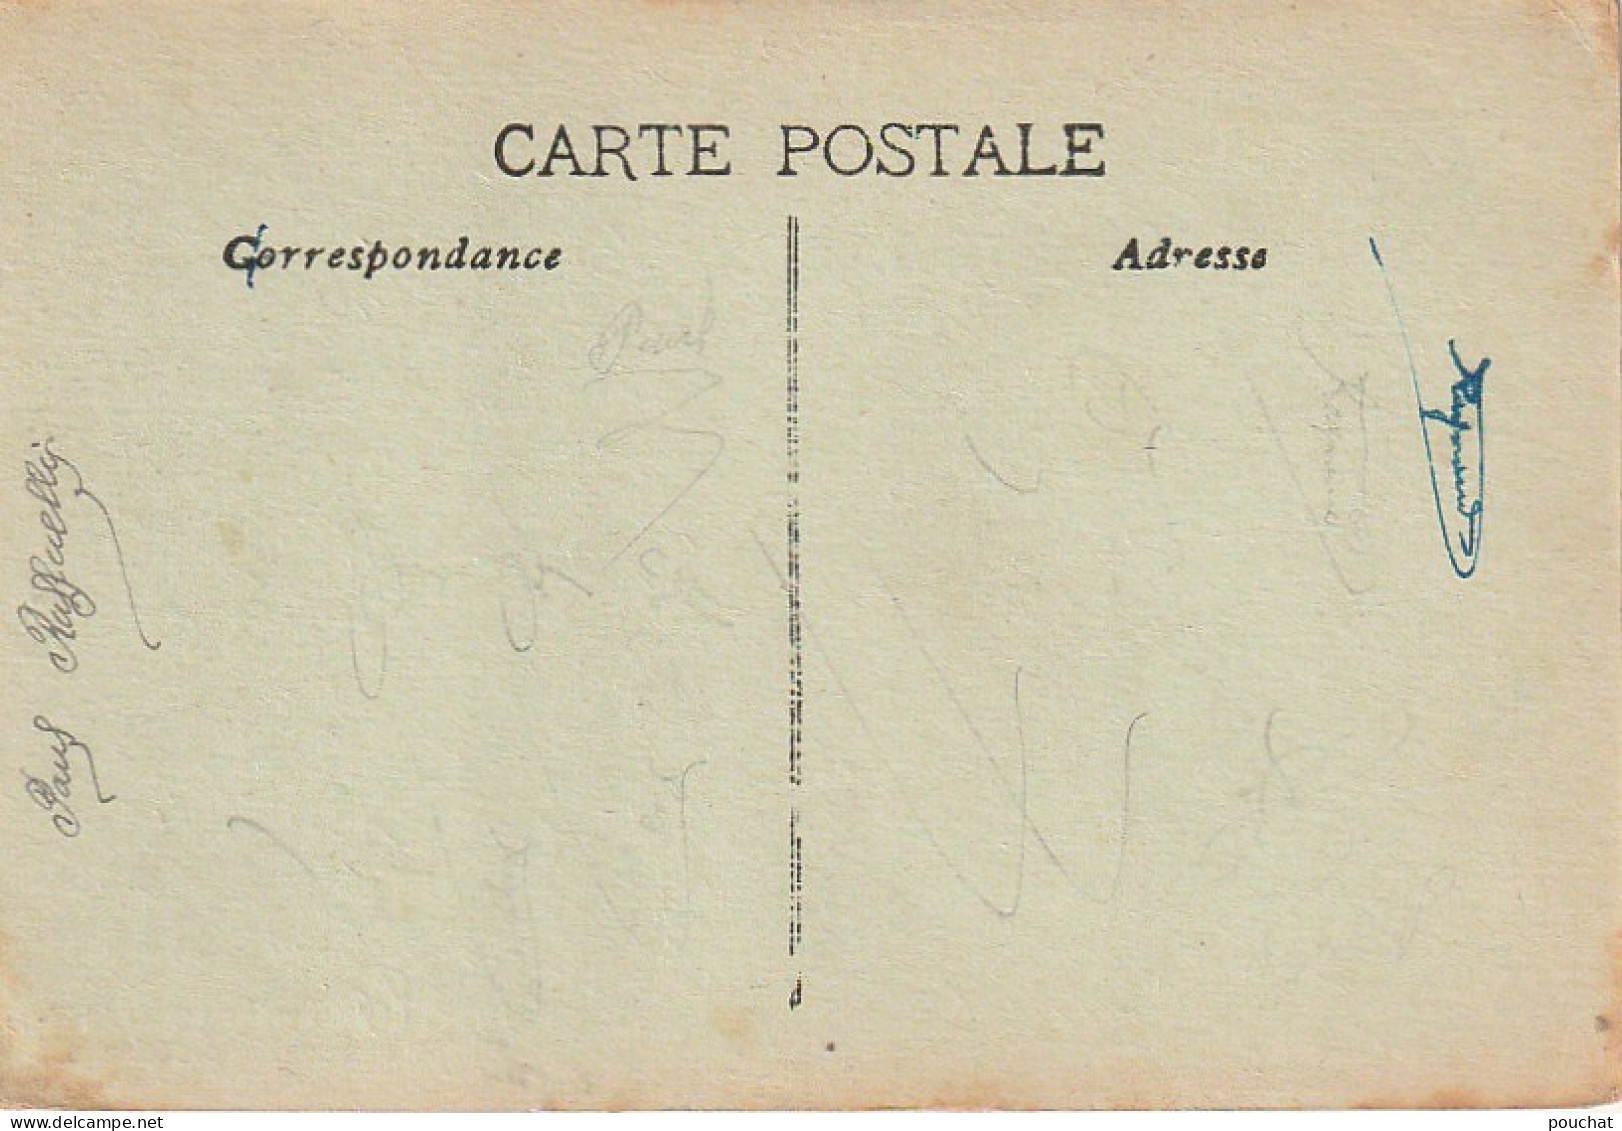 ZY 25-(13) MARSEILLE - EXPOSITION COLONIALE 1922 - PALAIS DU MINISTERE DES COLONIES - CARTE COLORISEE  - 2 SCANS - Koloniale Tentoonstelling 1906-1922